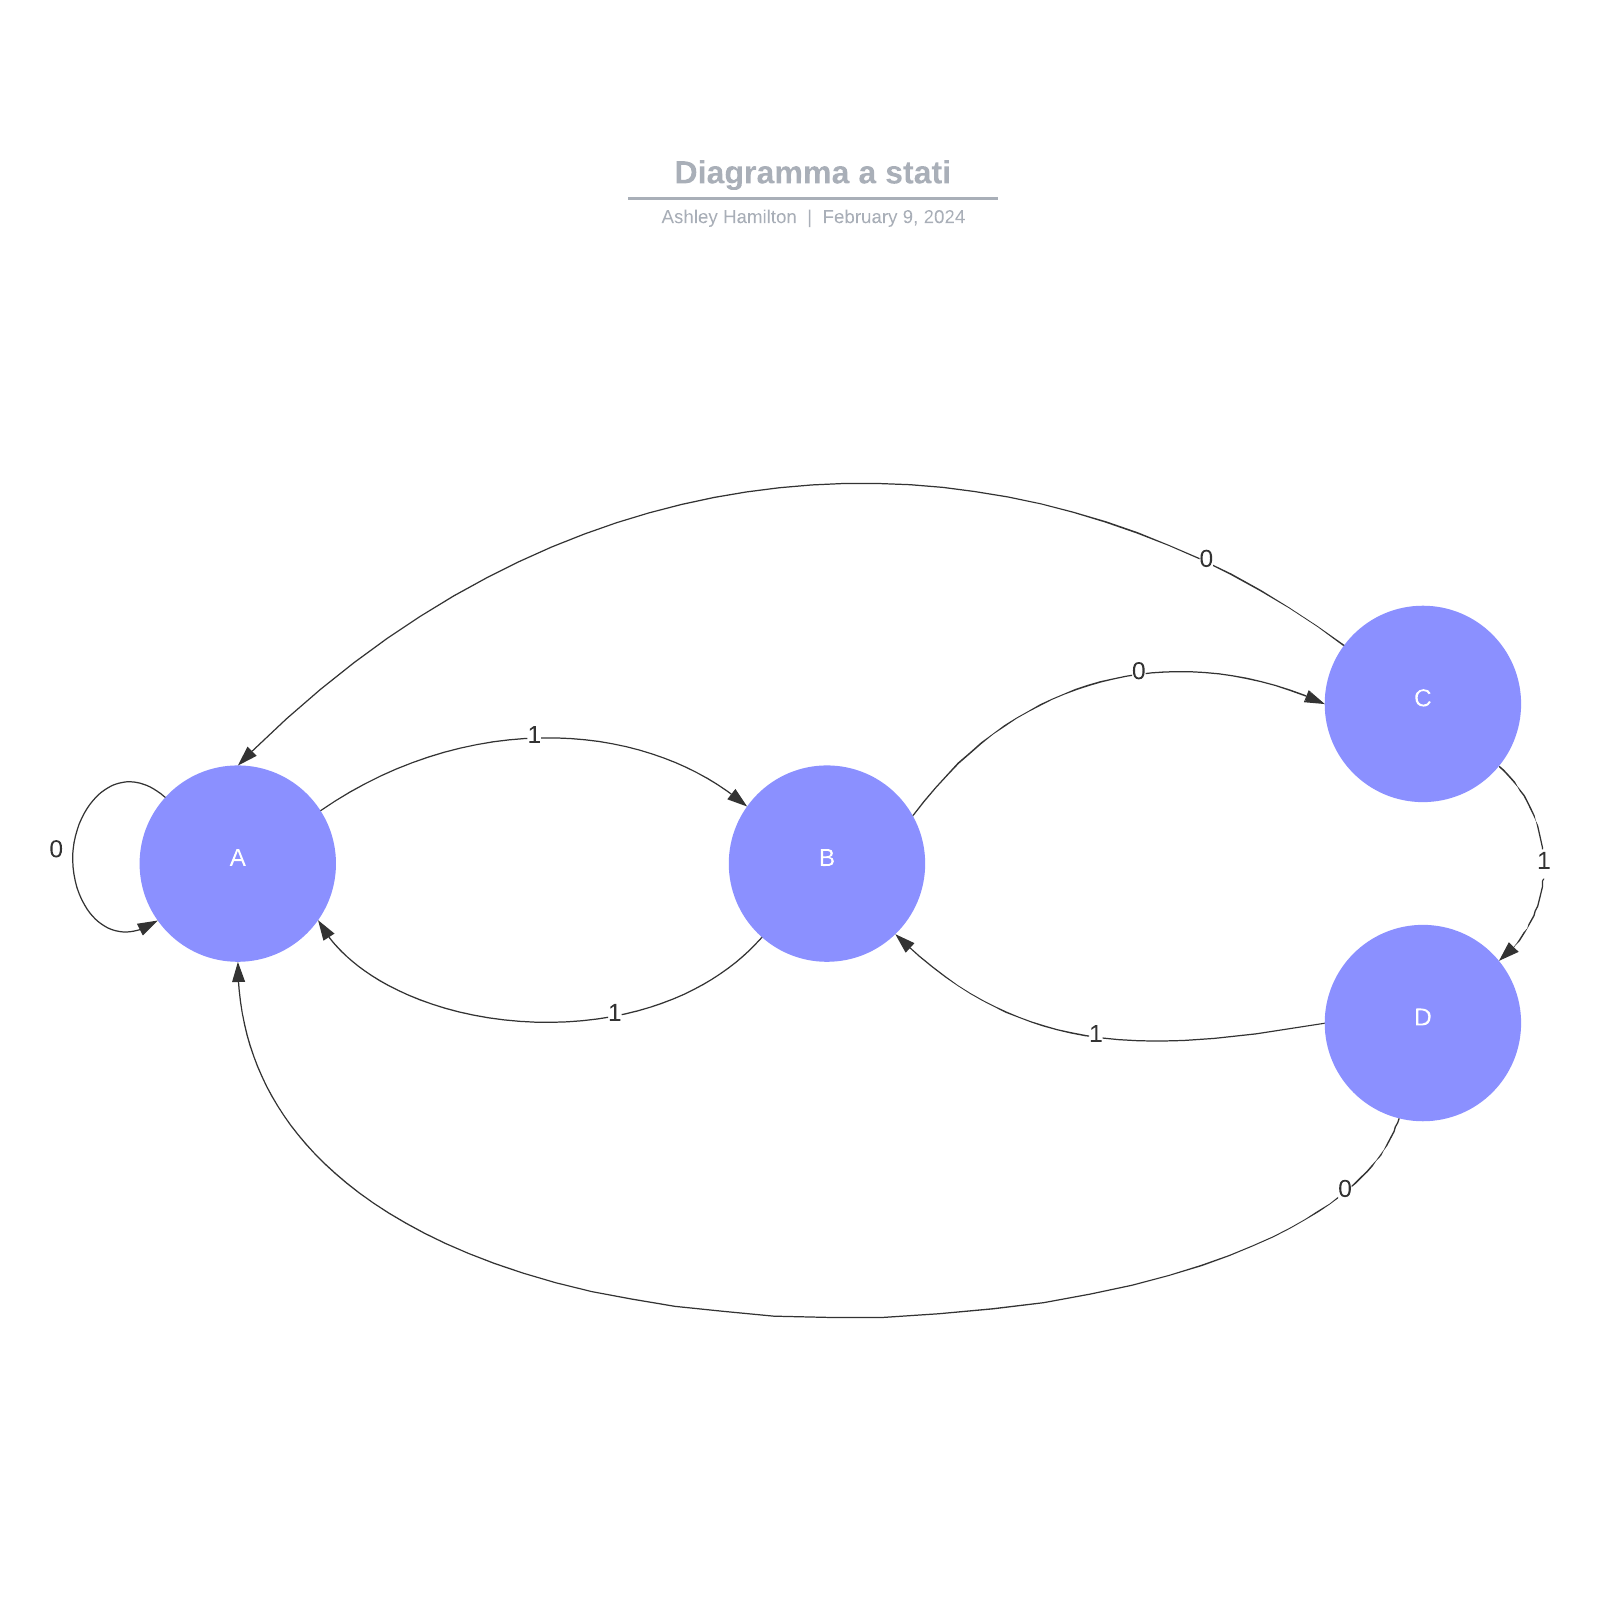 Diagramma a stati example